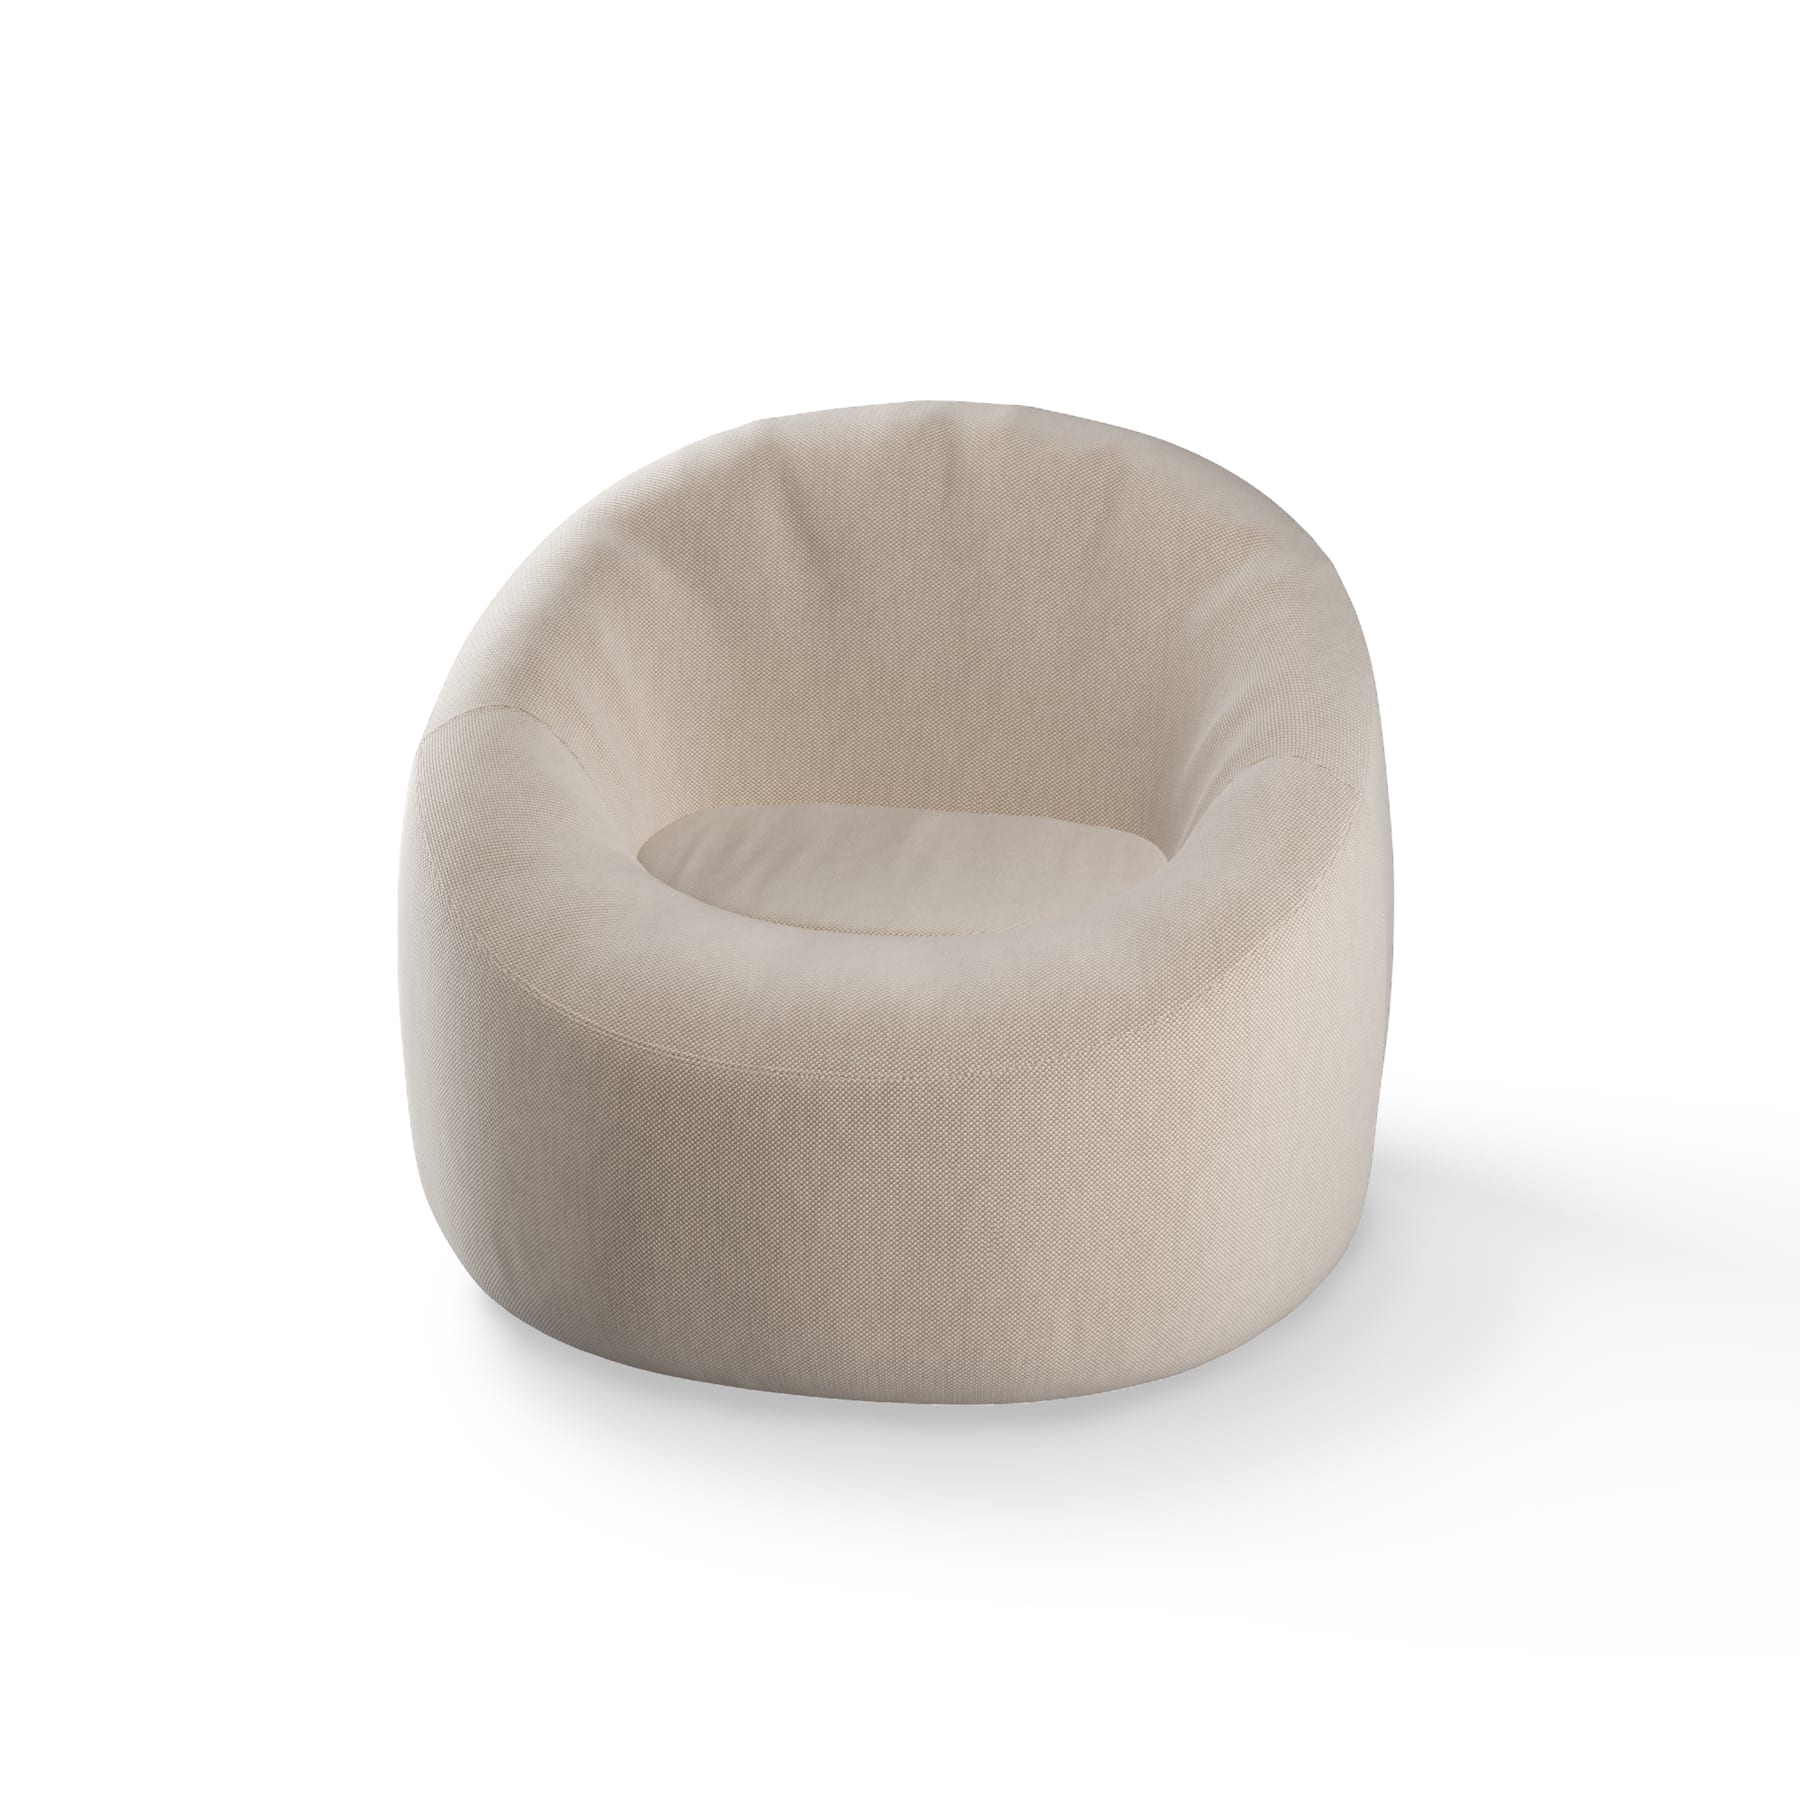 Chaise gonflable flottante en tissu imperméable beige